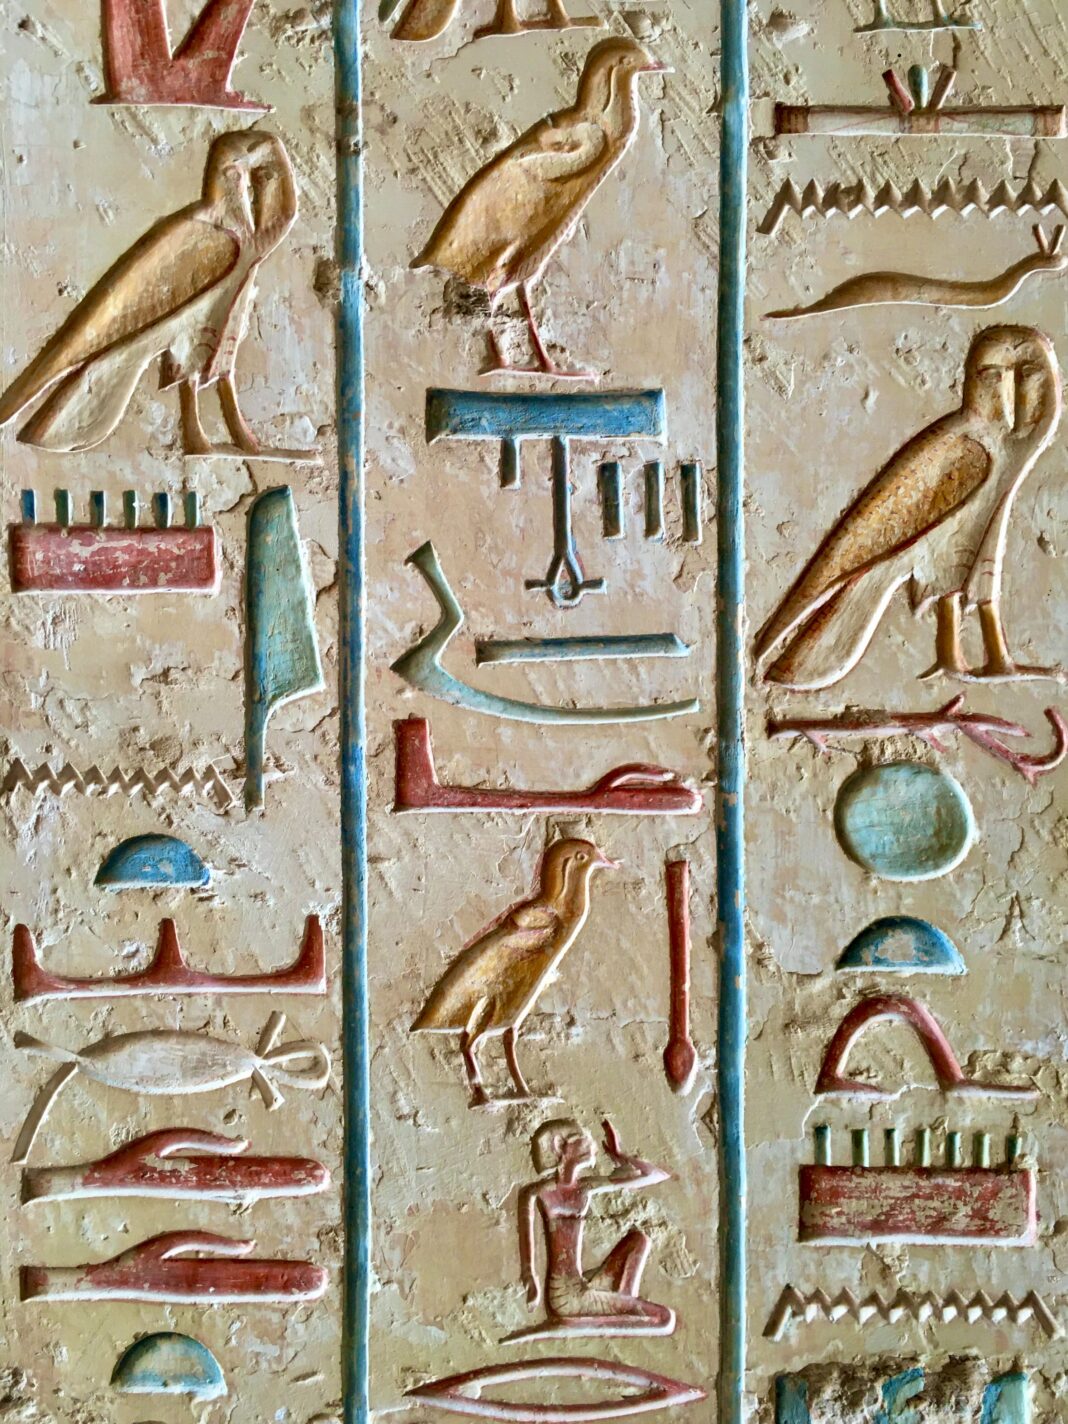 Archäologen haben in der Nähe von Kairo das Grab eines königlichen Schreibers entdeckt